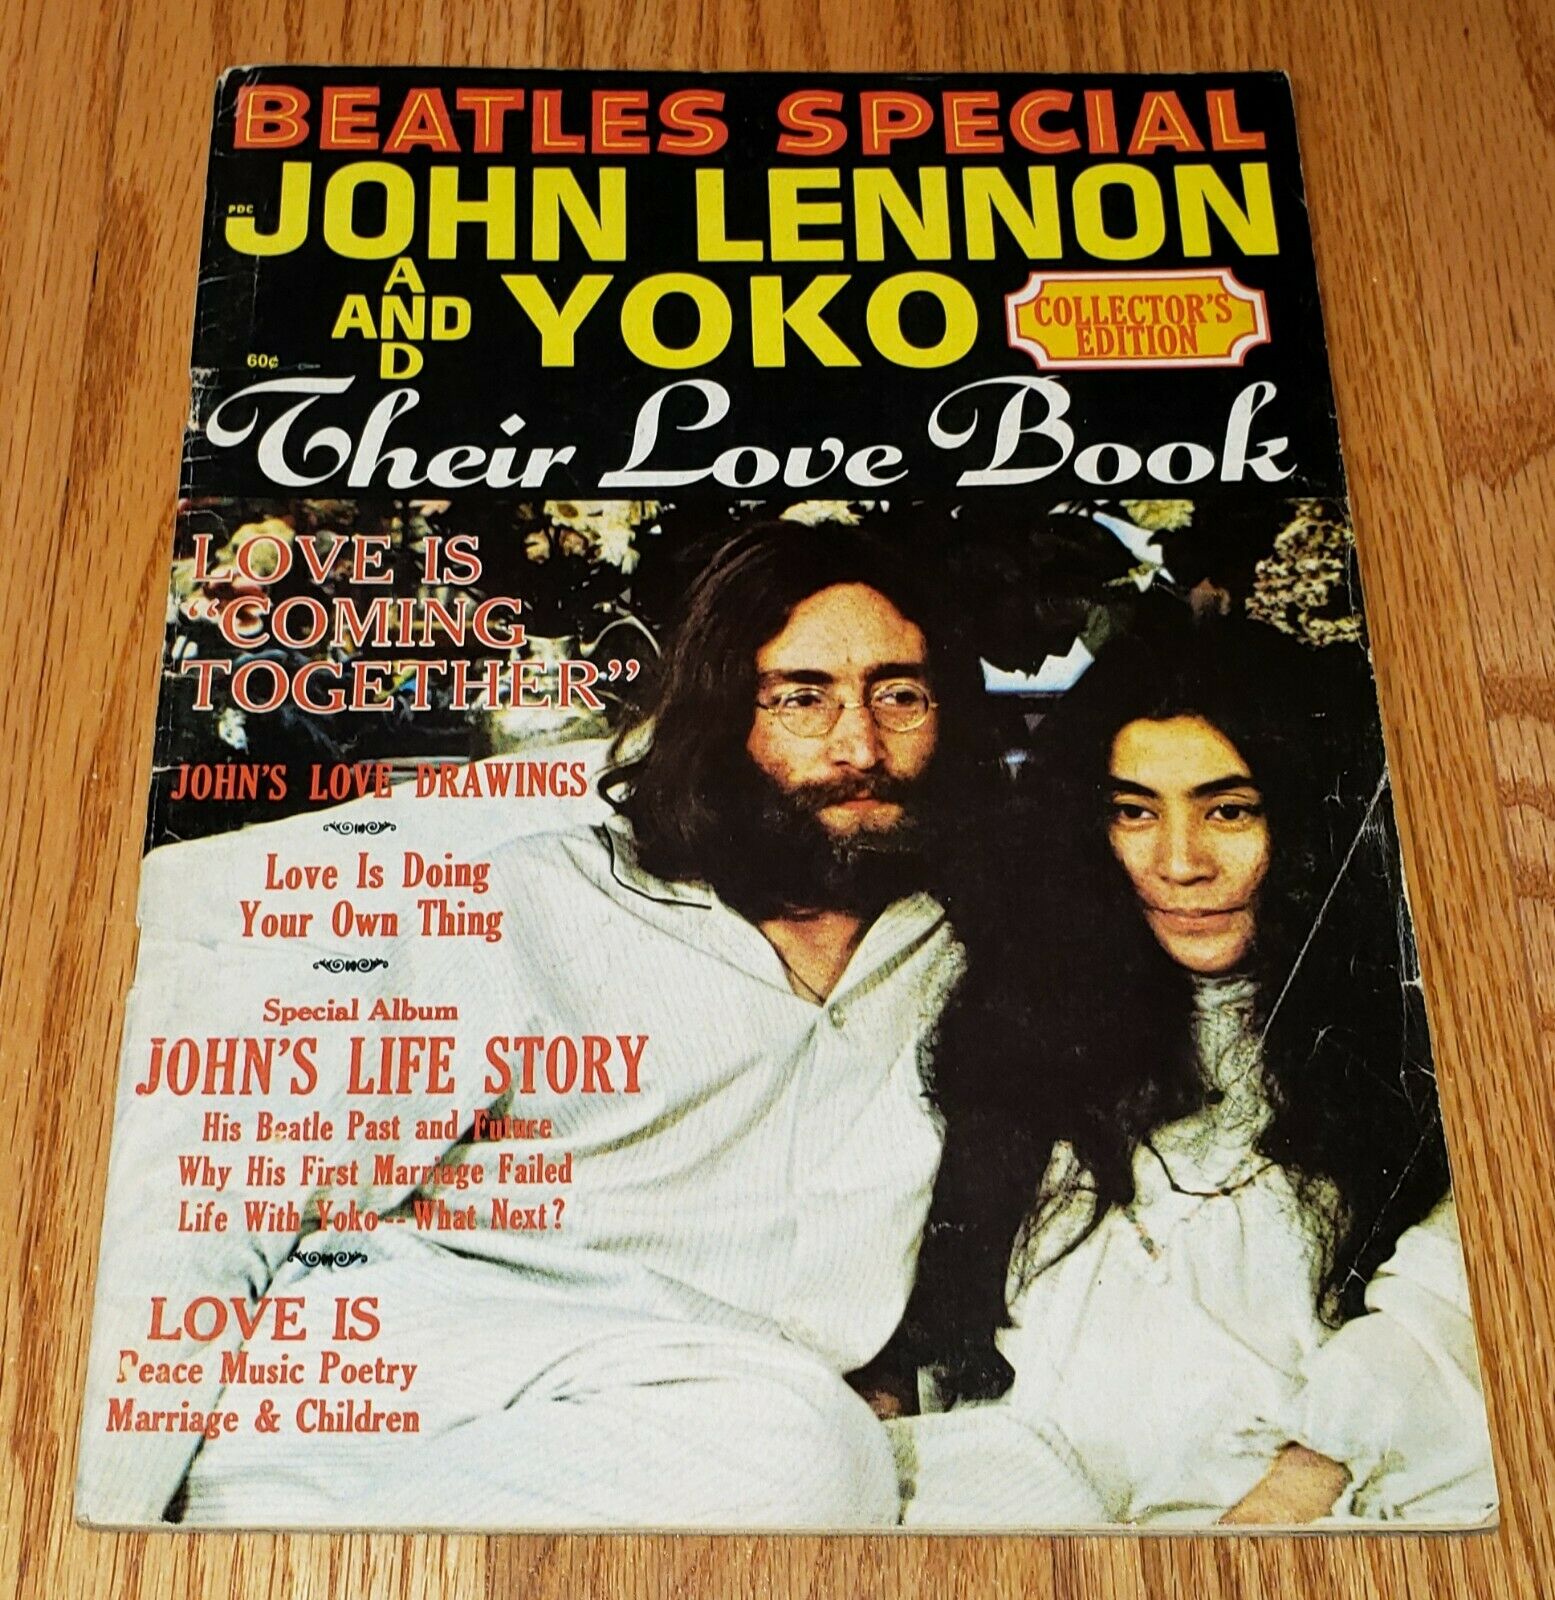 John Lennon Yoko Ono 1970 Love Book Collector's Edition Magazine Vg++ Beatles